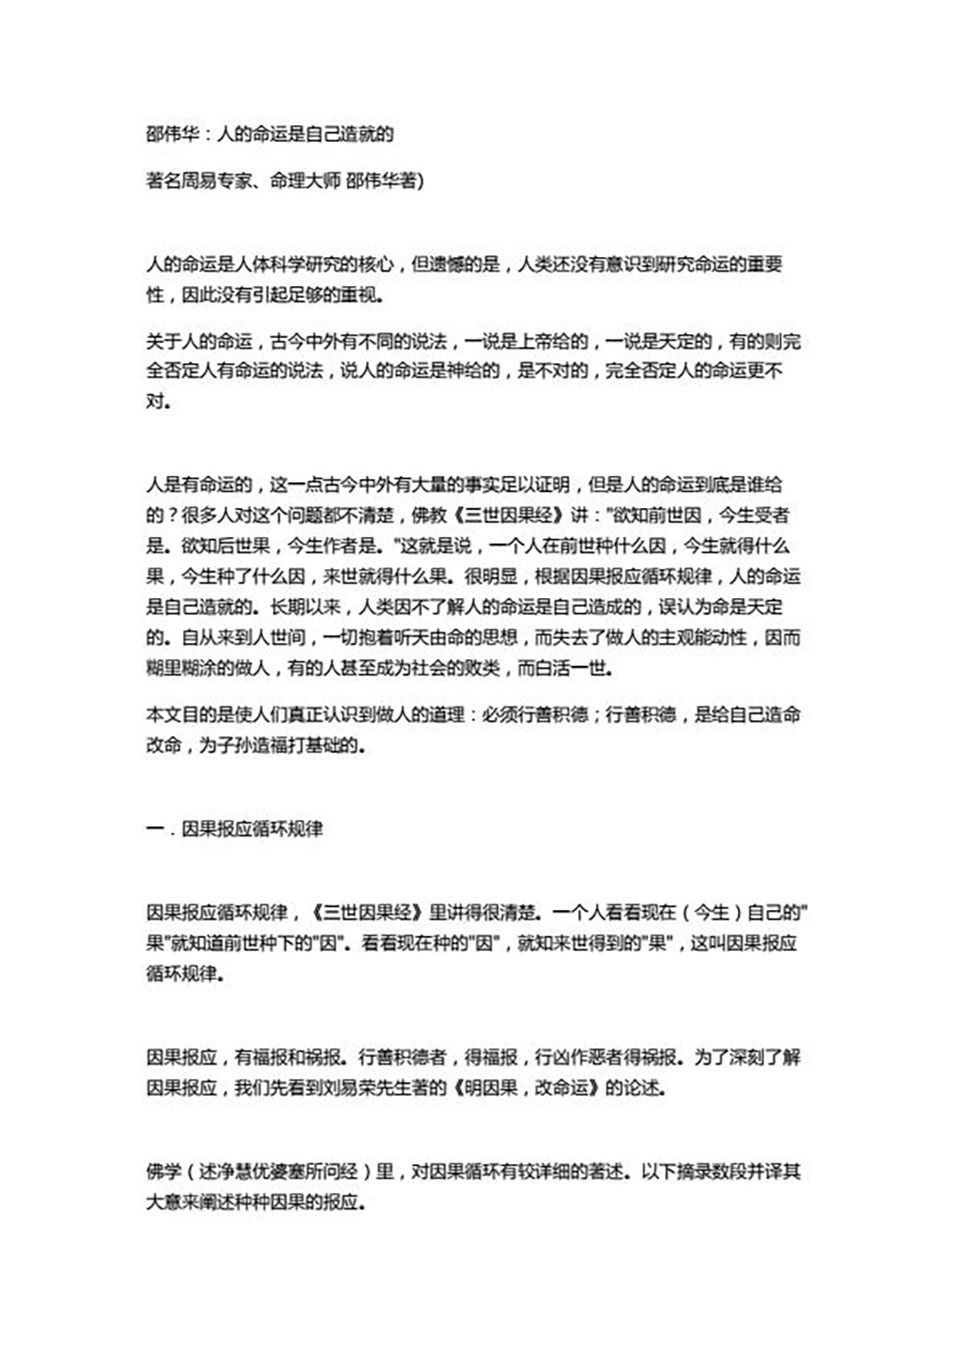 邵伟华-人的命运是自己造就的12页.pdf